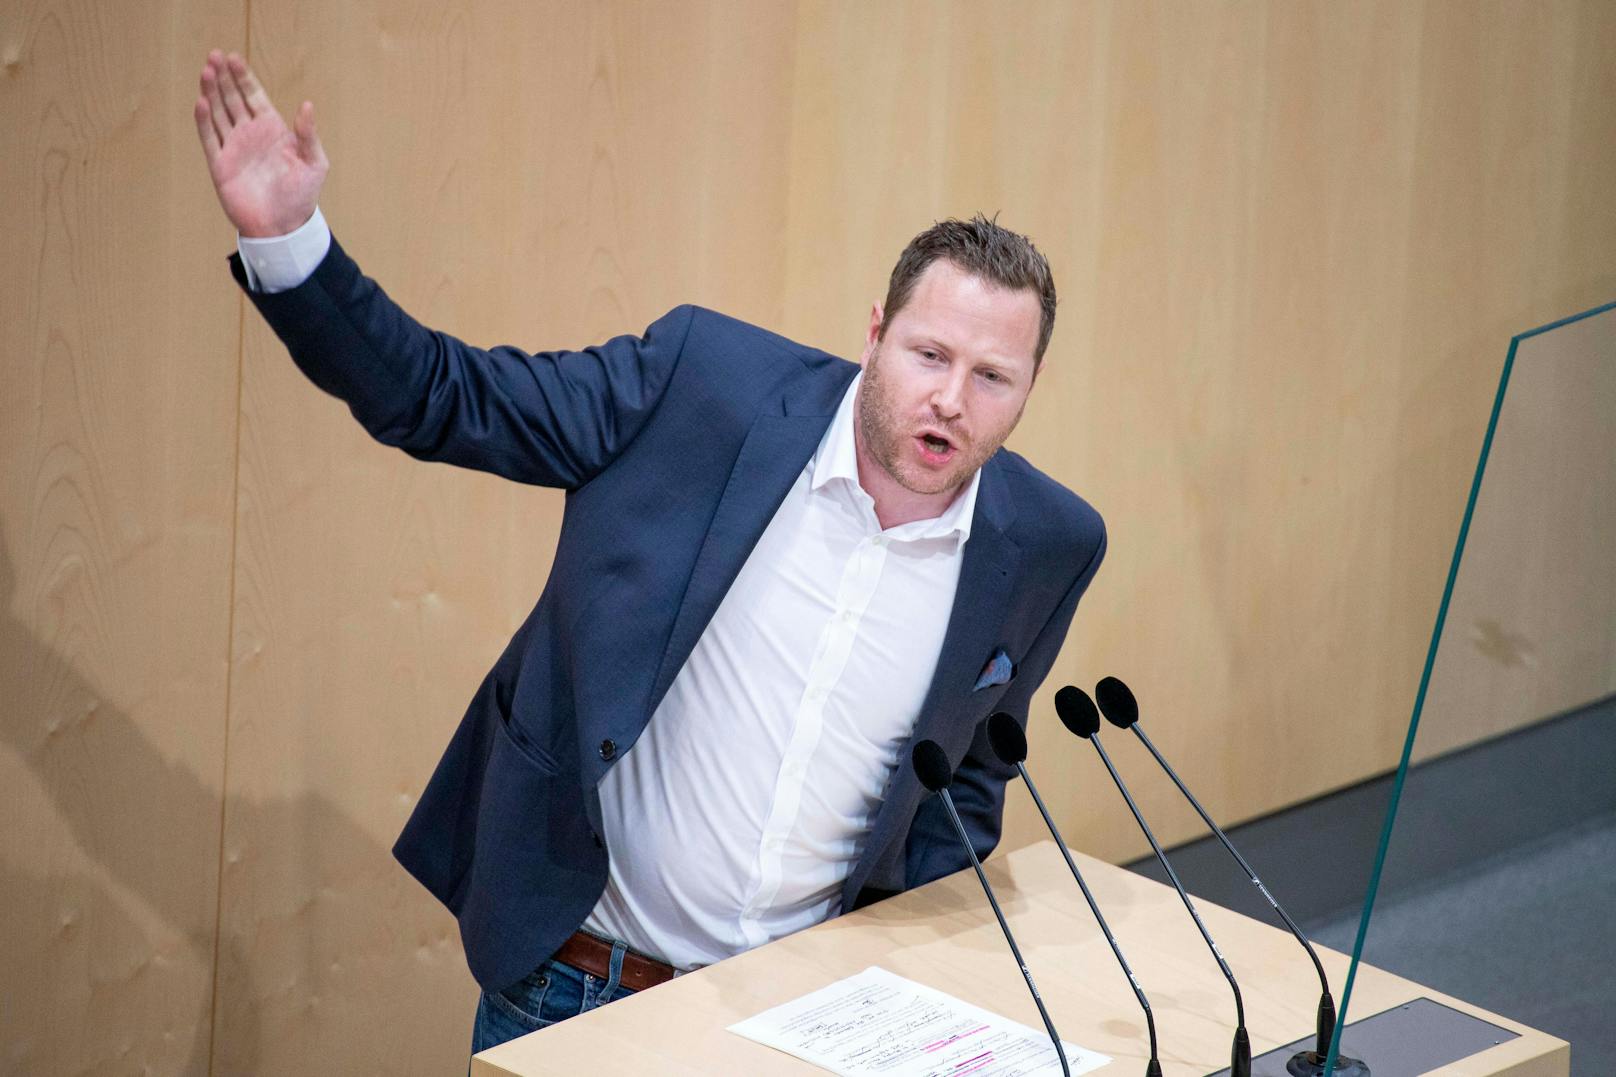 FPÖ tobt: "Van der Bellen verhöhnt die Österreicher"